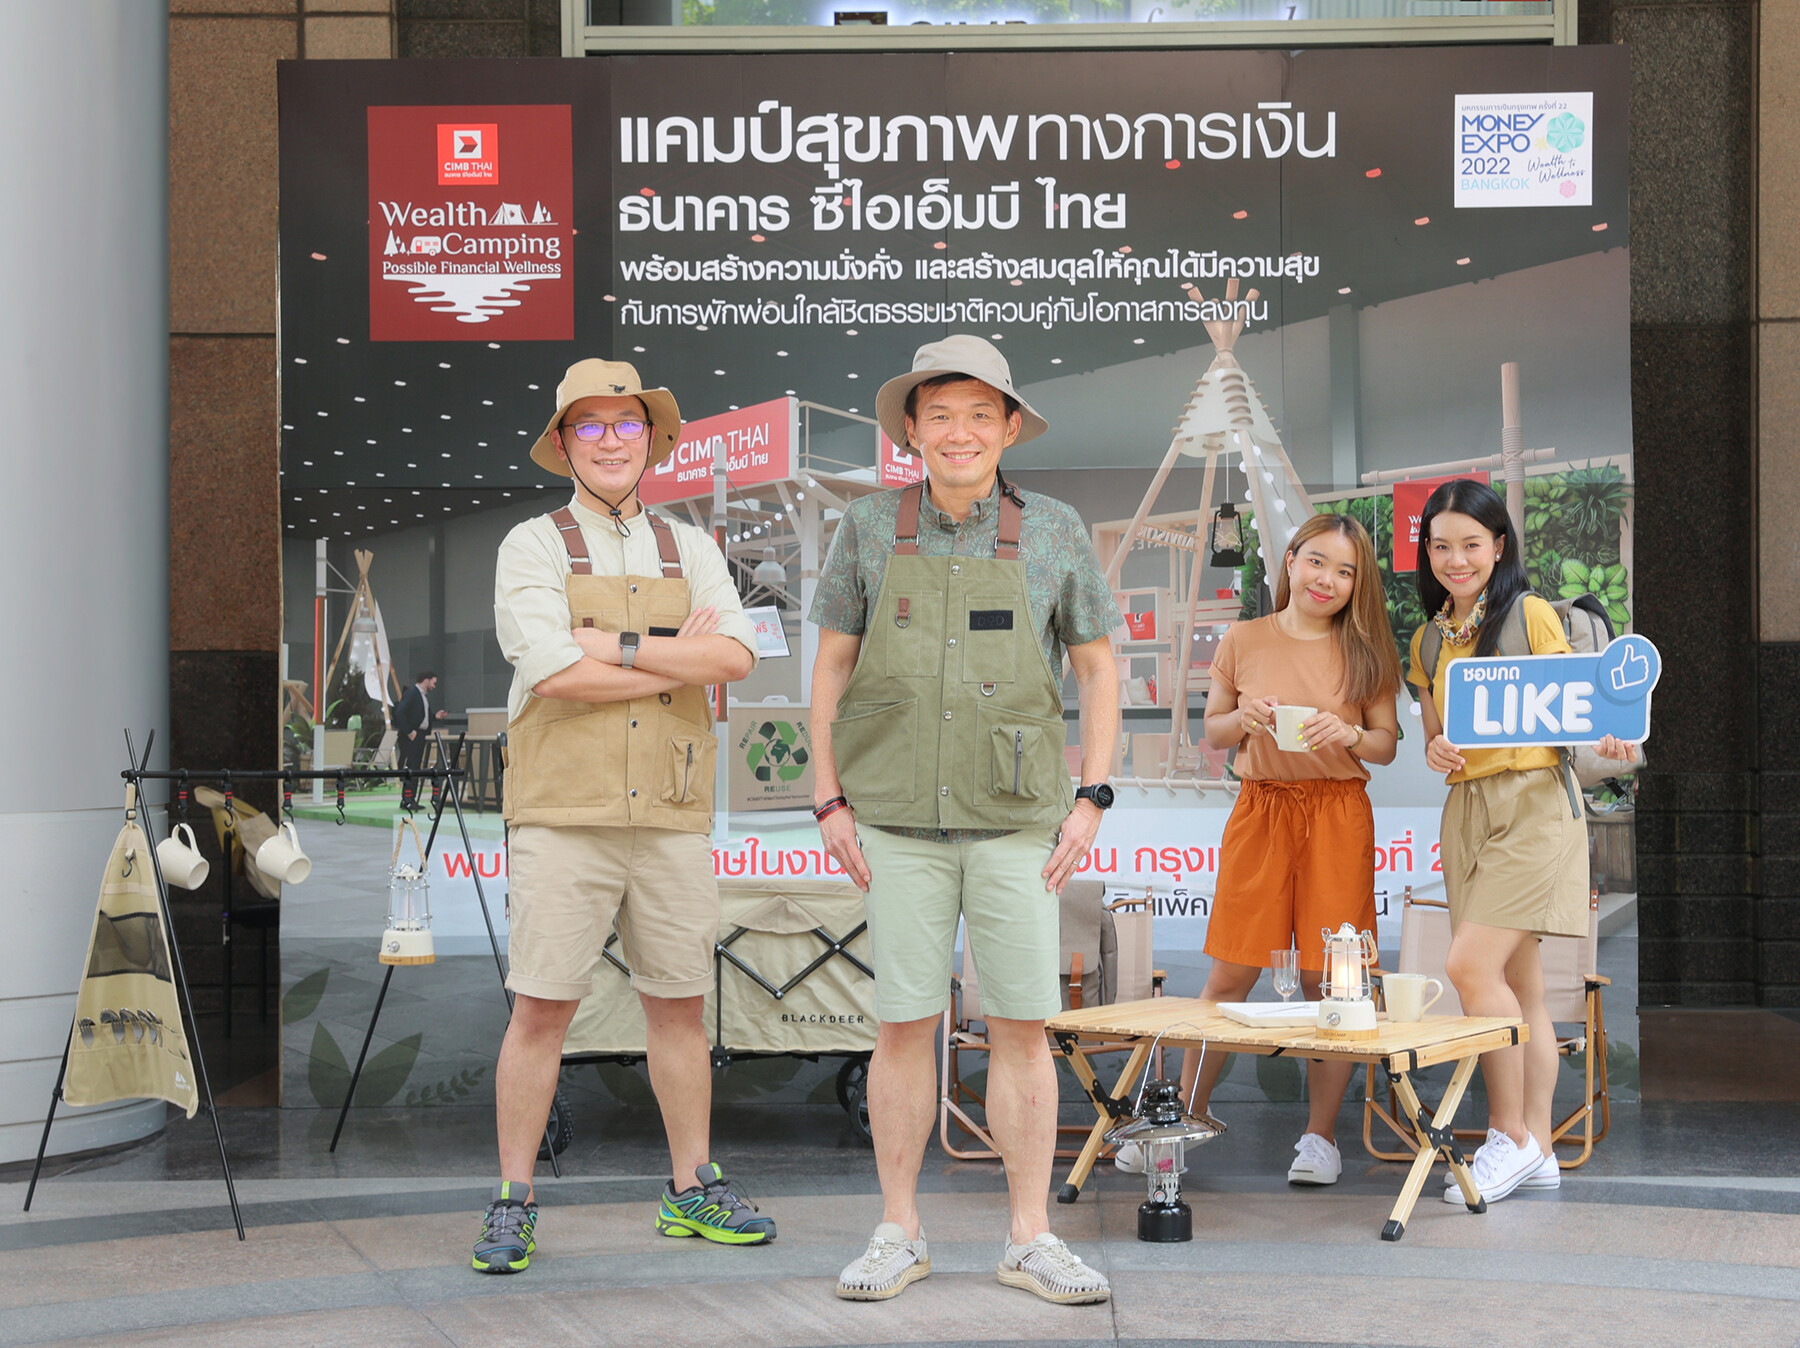 ธนาคาร ซีไอเอ็มบี ไทย ตั้งแคมป์สุขภาพทางการเงิน สร้างความมั่งคั่ง ควบคู่การสร้างสมดุลให้ชีวิต  ผ่านแนวคิด 'Wealth Camping : Possible Financial Wellness'  ในงาน Money Expo Bangkok 2022 วันที่ 12-15 พ.ค.2565